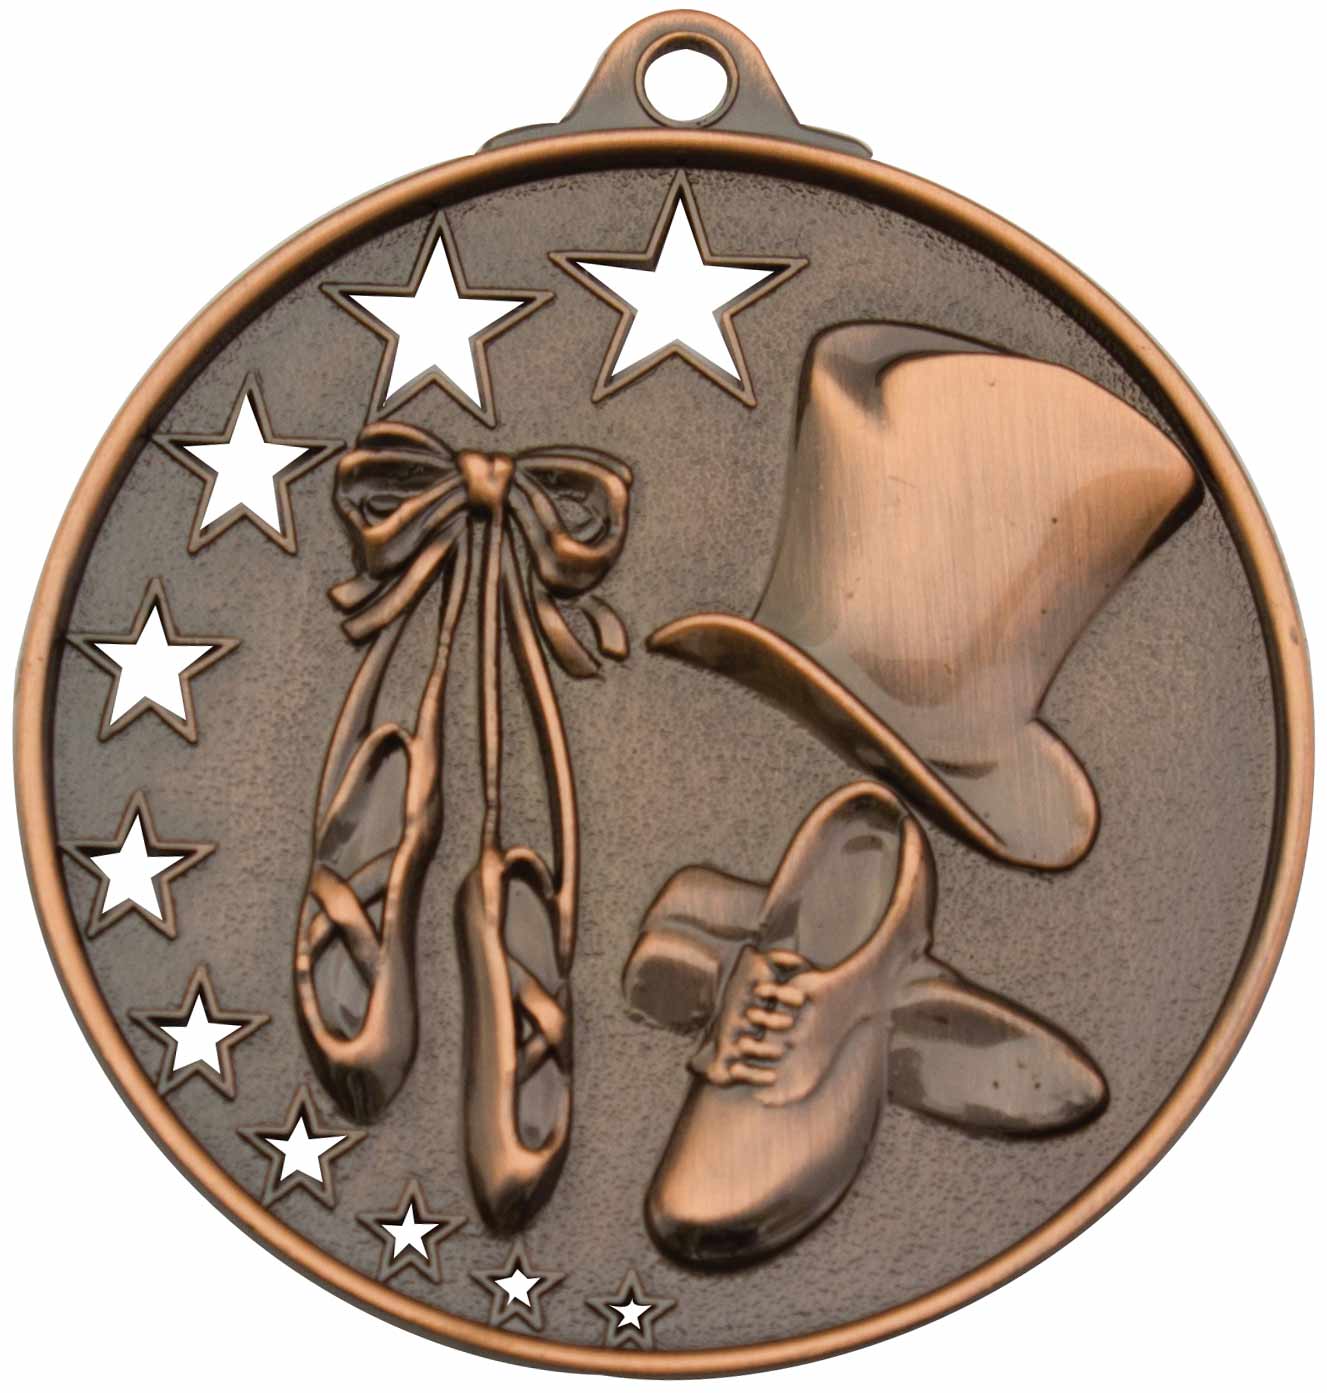 MH932 Dance Medal